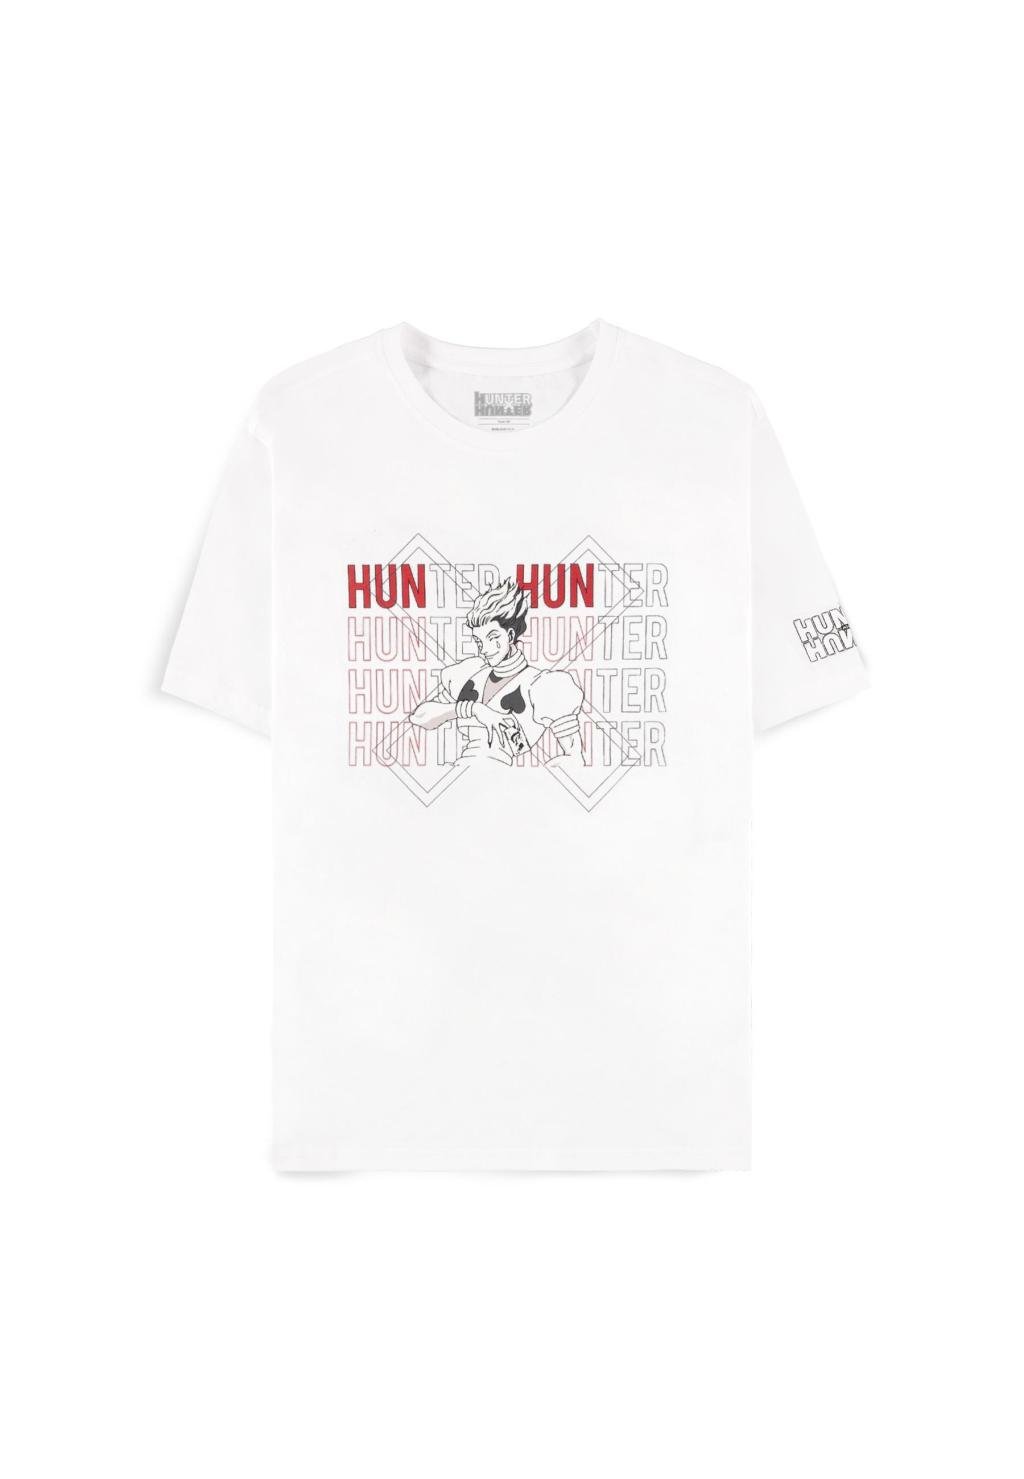 HUNTER X HUNTER - Hisoka - Women's T-shirt (XL)